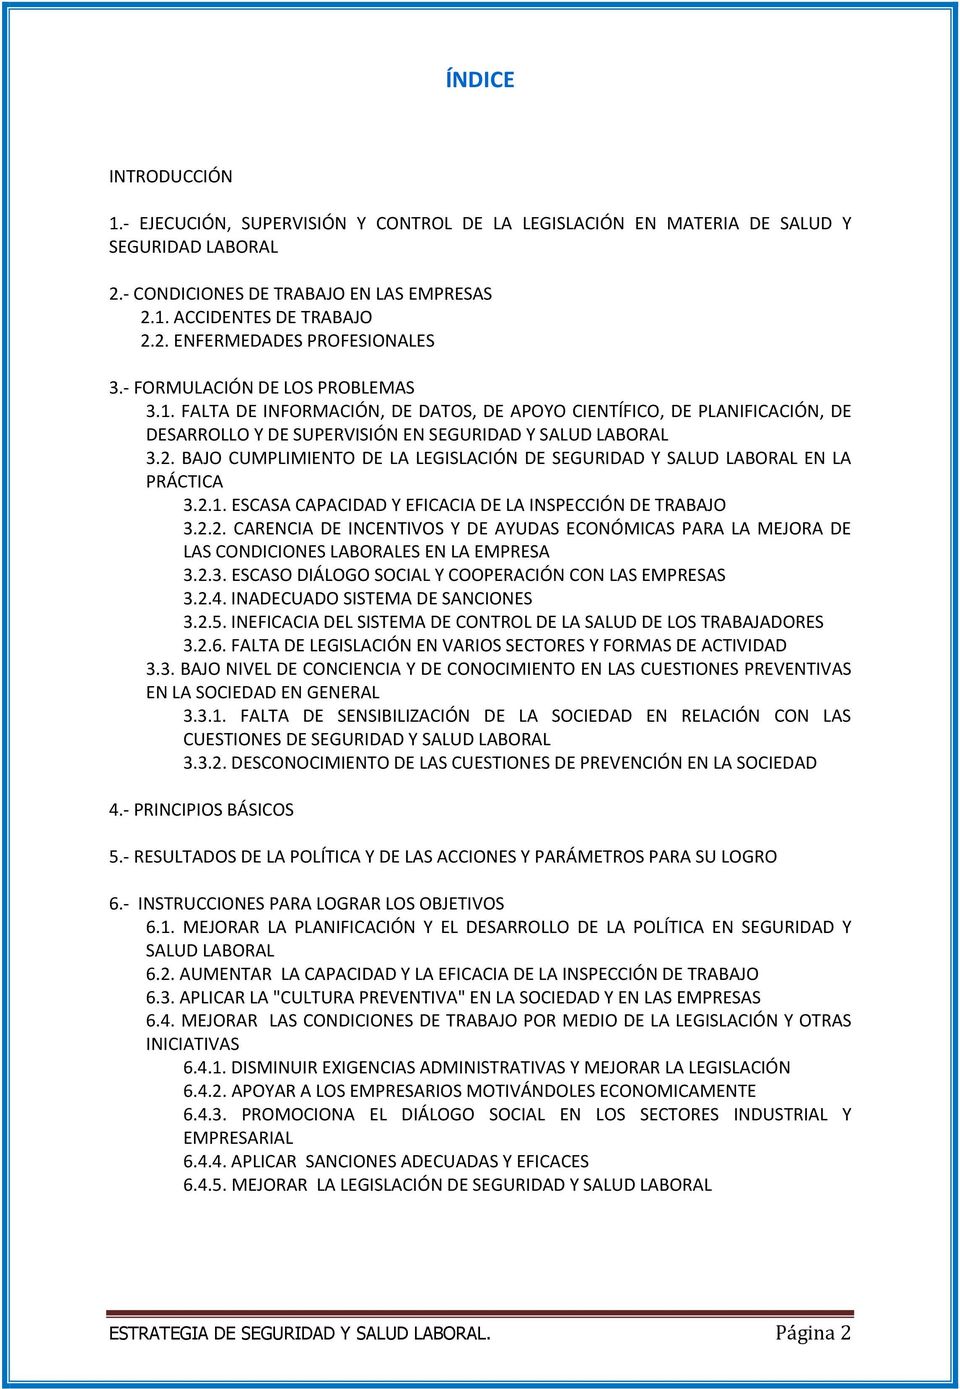 BAJO CUMPLIMIENTO DE LA LEGISLACIÓN DE SEGURIDAD Y SALUD LABORAL EN LA PRÁCTICA 3.2.1. ESCASA CAPACIDAD Y EFICACIA DE LA INSPECCIÓN DE TRABAJO 3.2.2. CARENCIA DE INCENTIVOS Y DE AYUDAS ECONÓMICAS PARA LA MEJORA DE LAS CONDICIONES LABORALES EN LA EMPRESA 3.